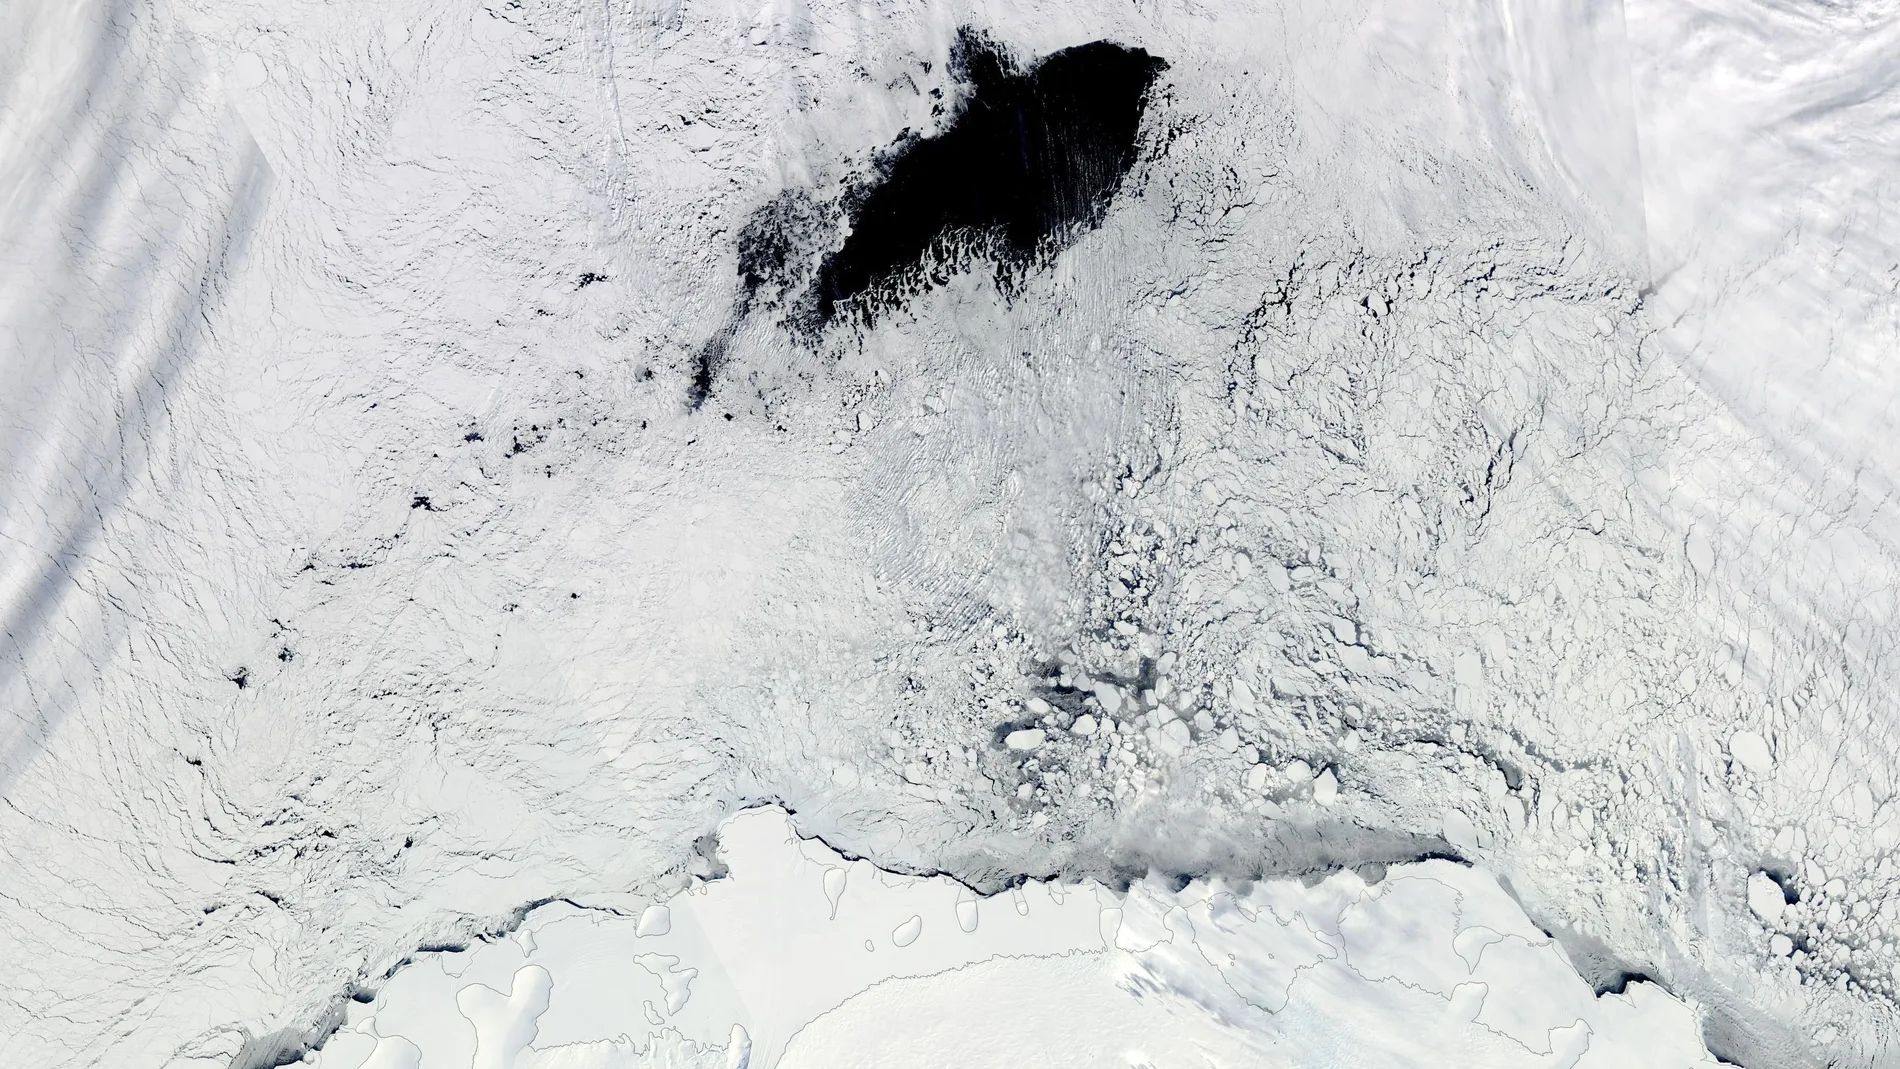 Polinia surgida en septiembre de 2017 tras la aparición de un río atmosférico que llevaba aire caliente y húmedo desde Sudamérica hasta el mar de Weddell